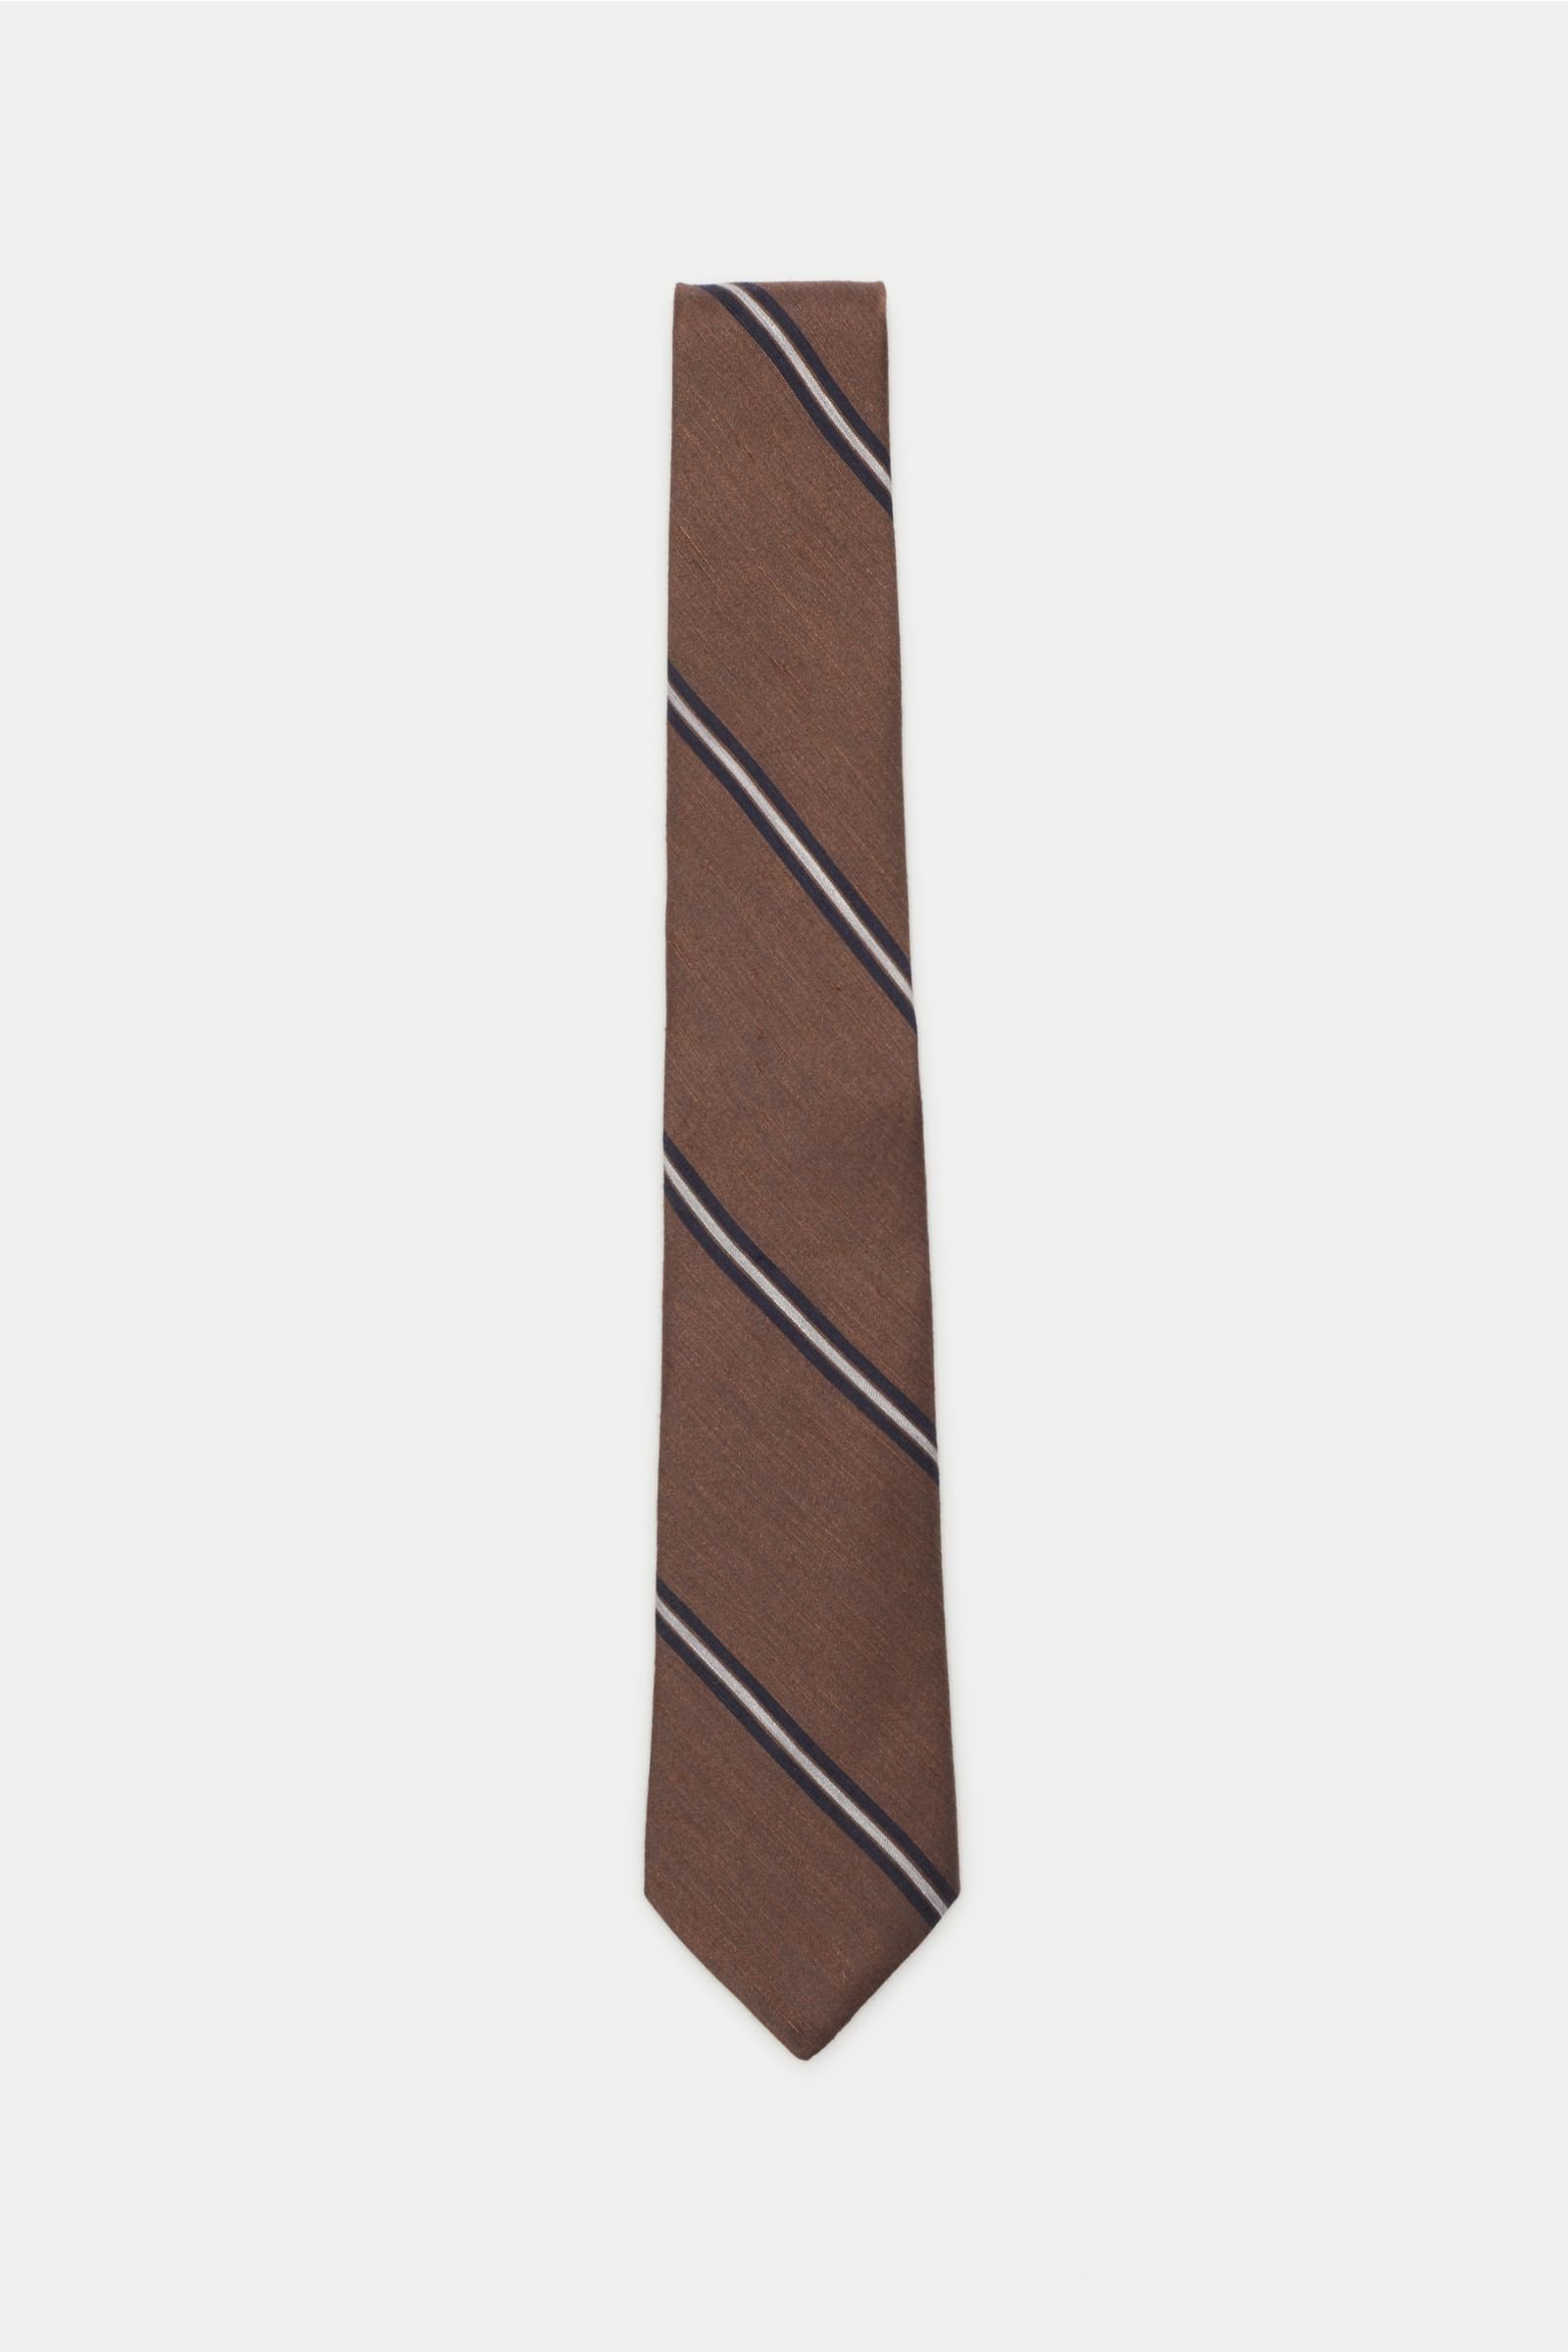 Tie dark brown/navy striped